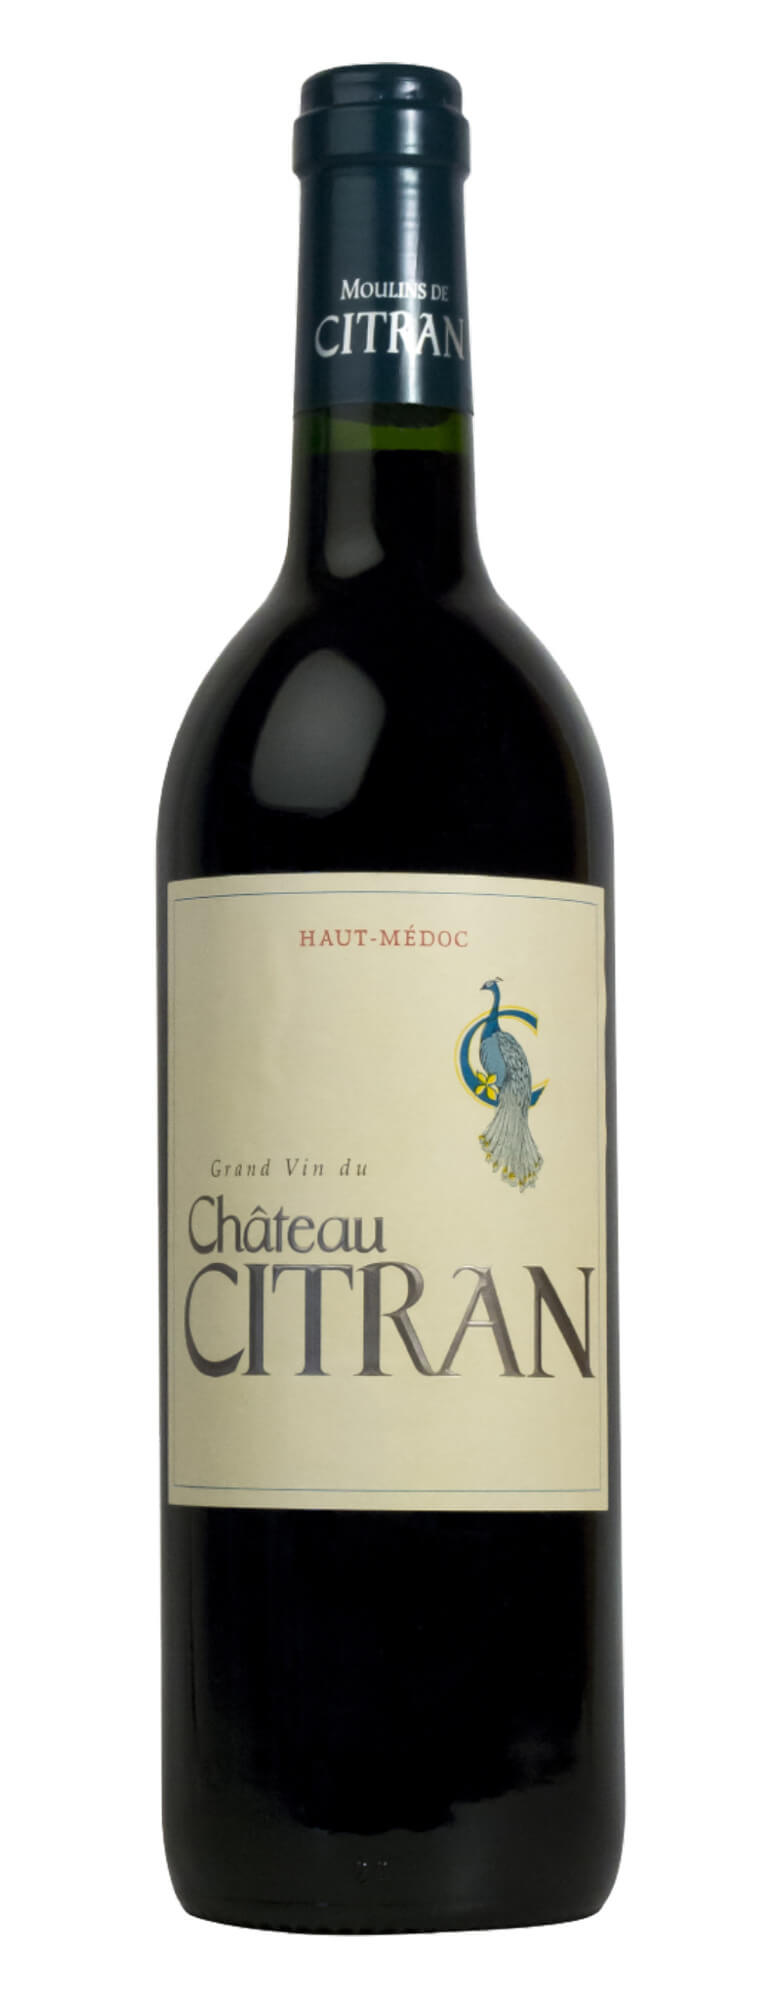 Rượu Vang Pháp Haut Medoc Chateau Citran Grand Vin du